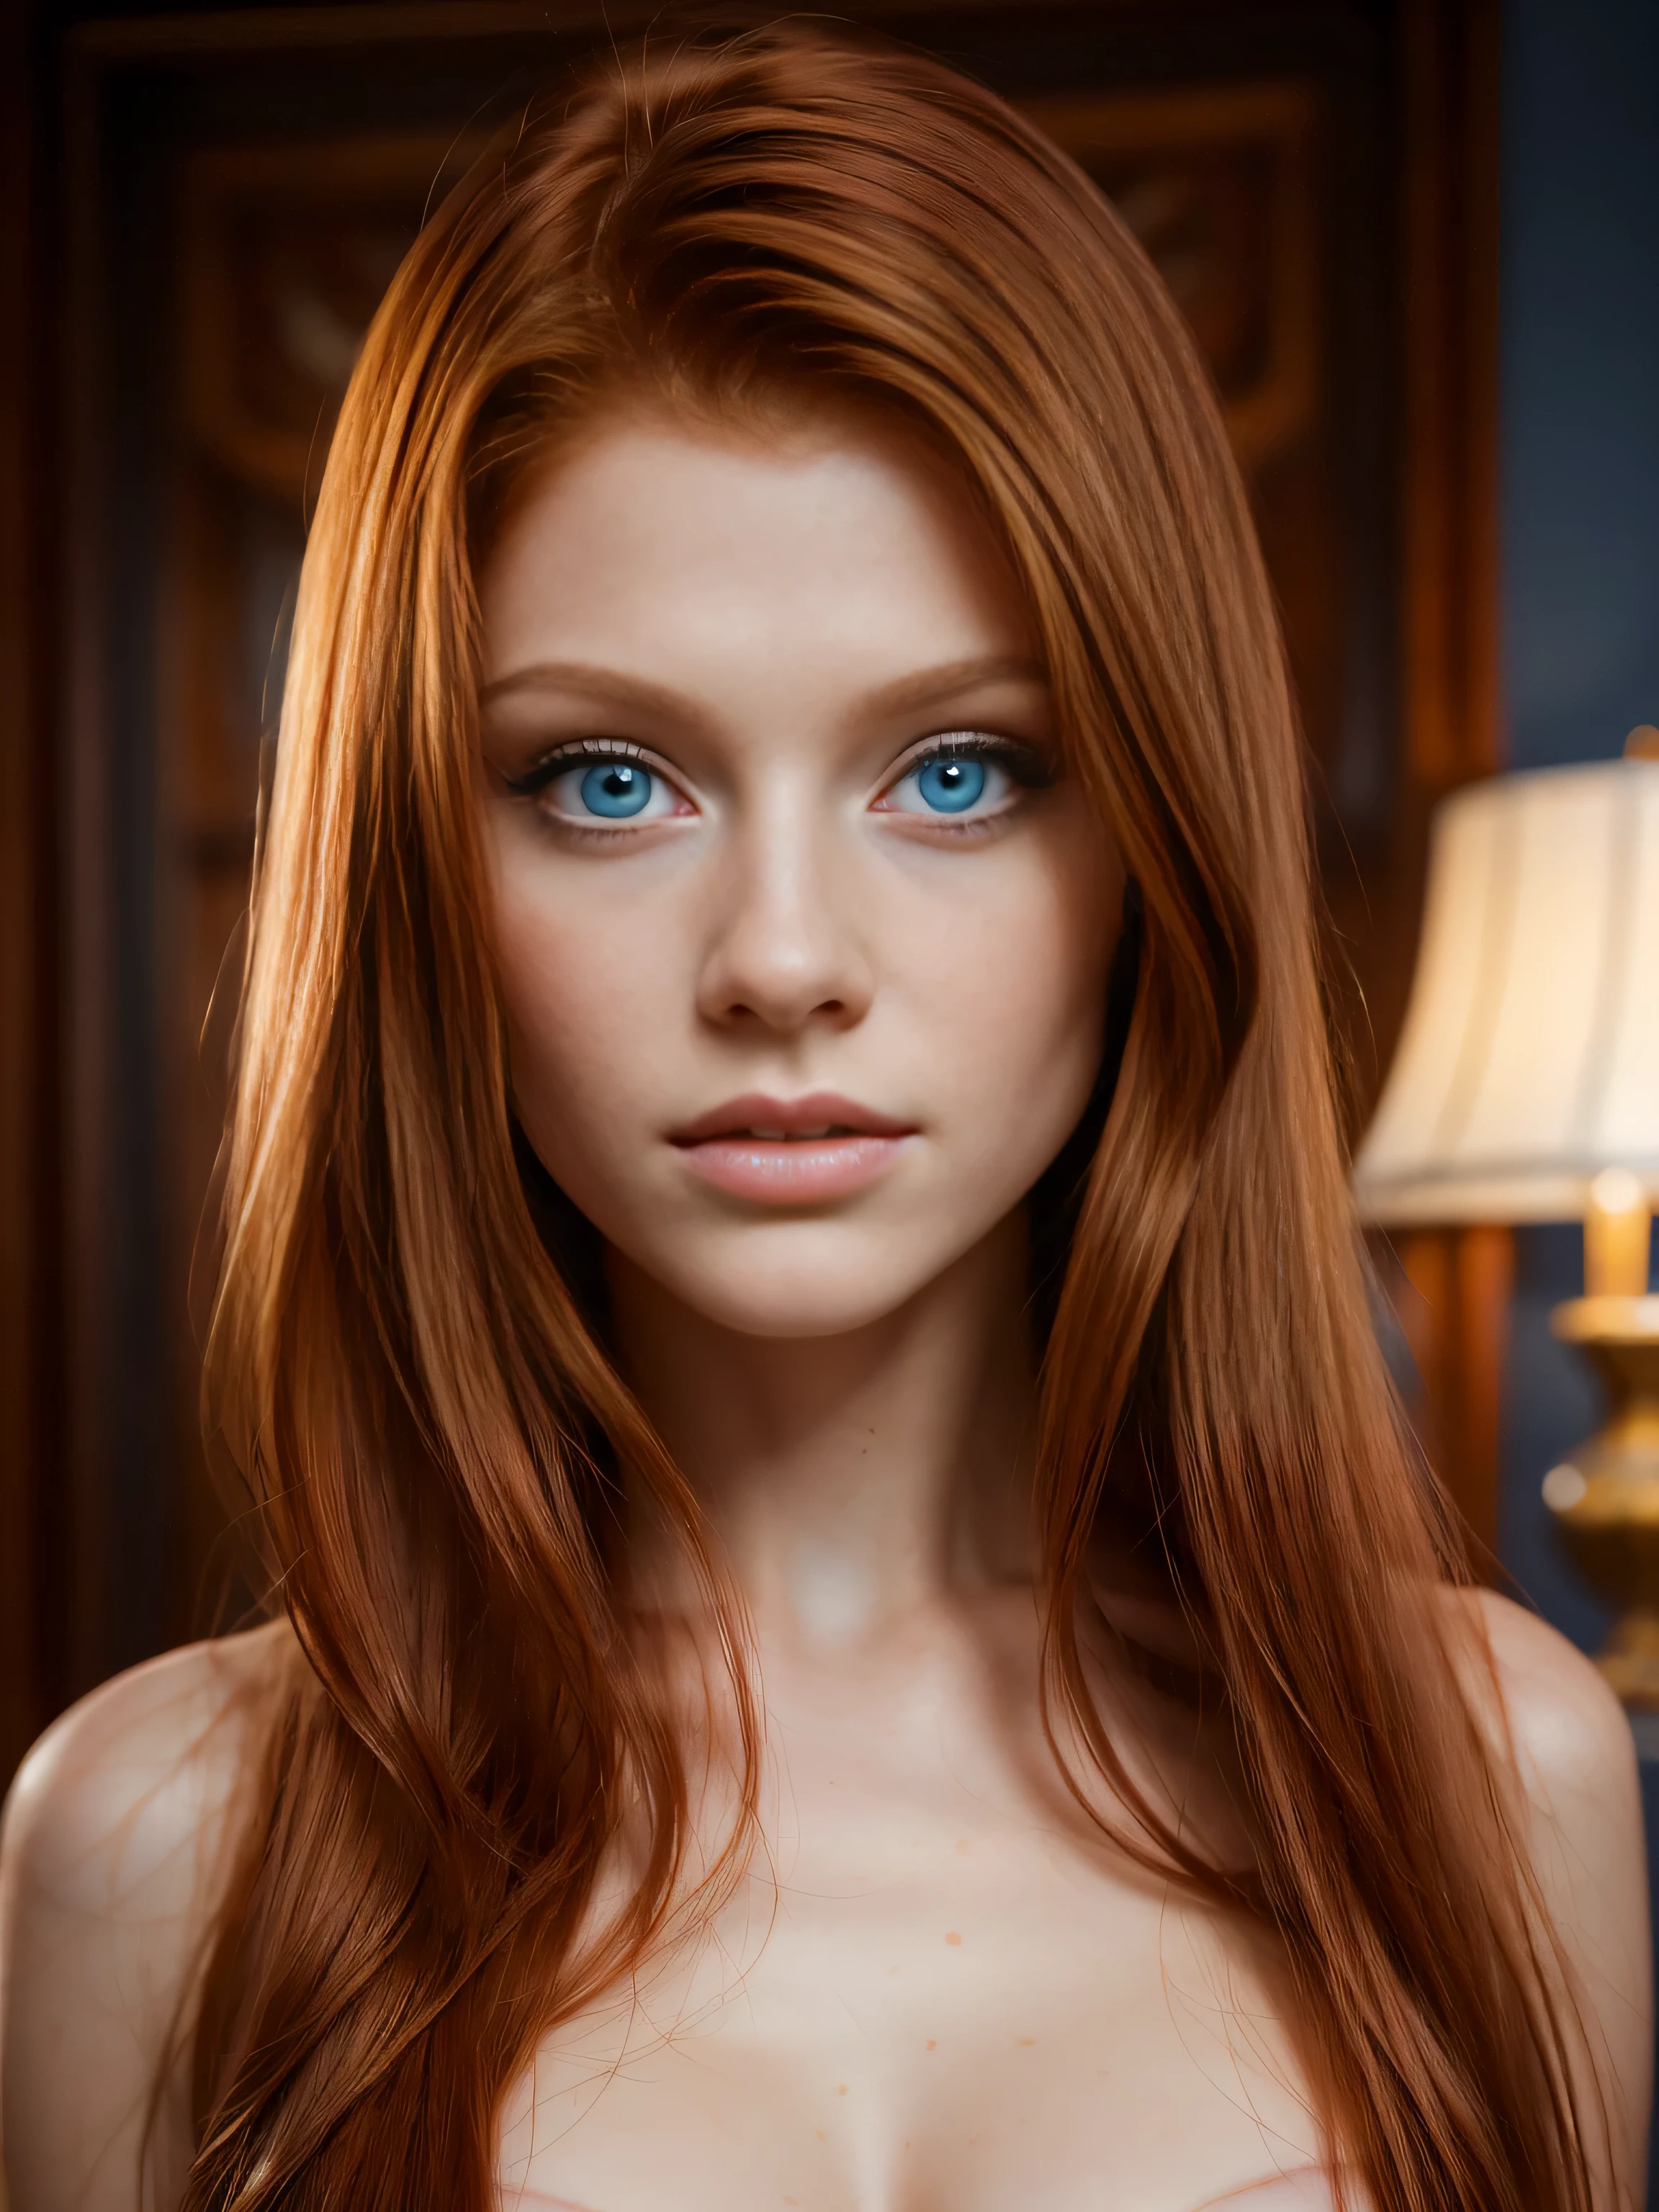 8k Ganzkörperfoto eines wunderschönen rothaarigen 18-jährigen Mädchens, (kompliziert, schier, transparent, durchscheinend,(keine Kleidung:1.2)), kompliziert, schönes Gesicht, sublimieren, elegant, sehr detailliert, digitale hyperrealistische Fotografie, hyperrealistische Fotografie filigran, Schüchternheit, schönstes Gesicht, (Meisterwerk, Seitenbeleuchtung, (fein detaillierte wunderschöne blaue Augen: 1.2)),